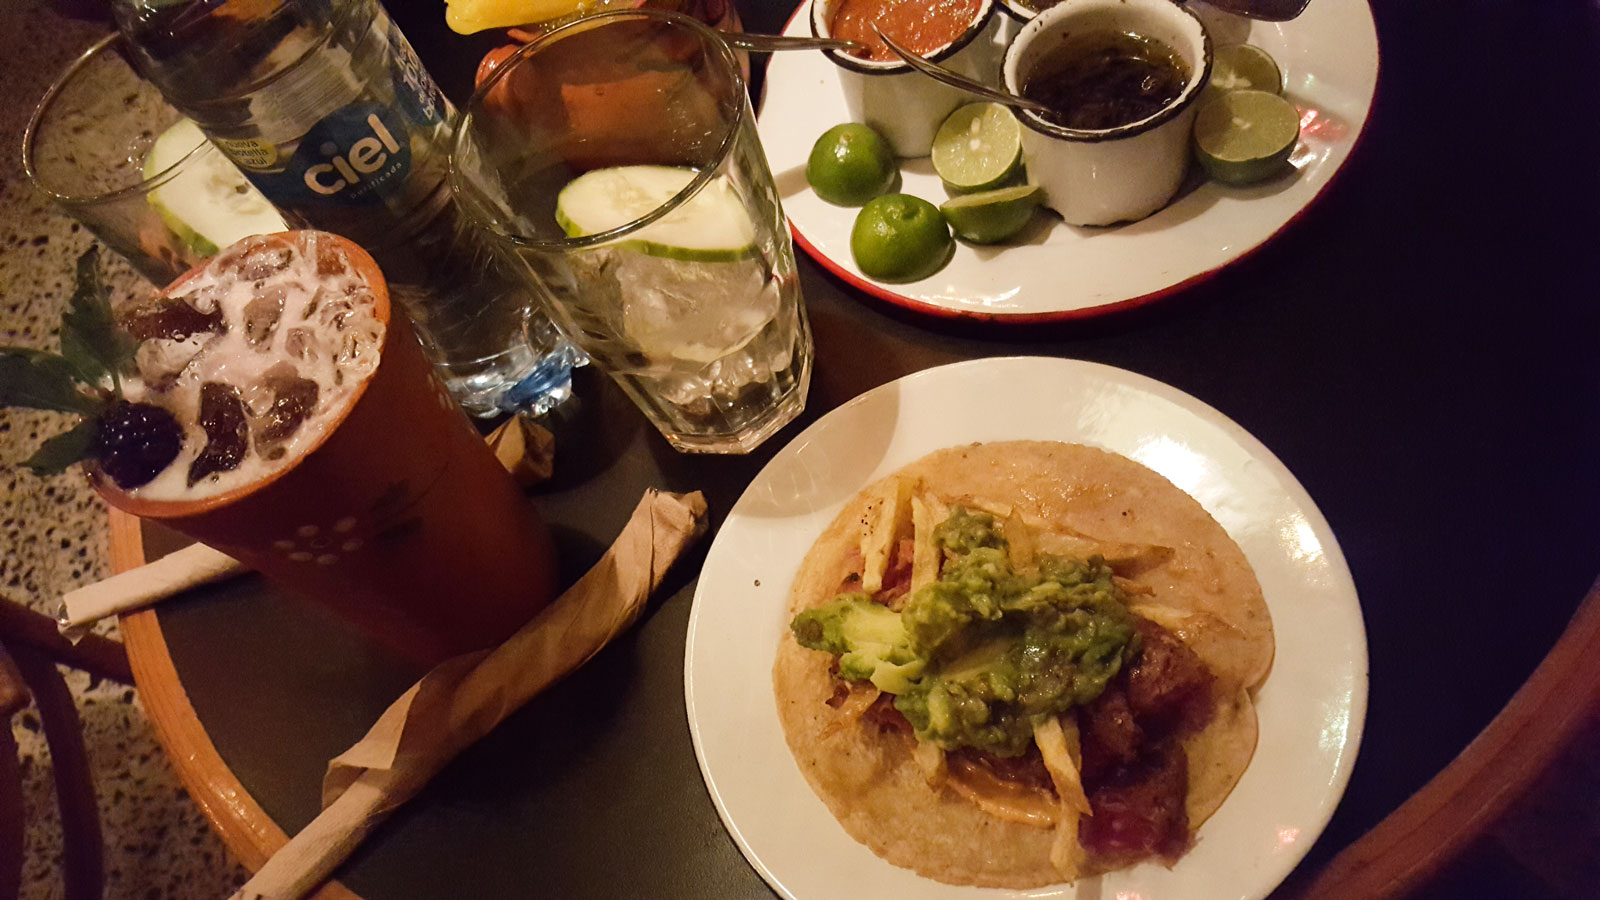 Late night tacos and drinks at Barnita